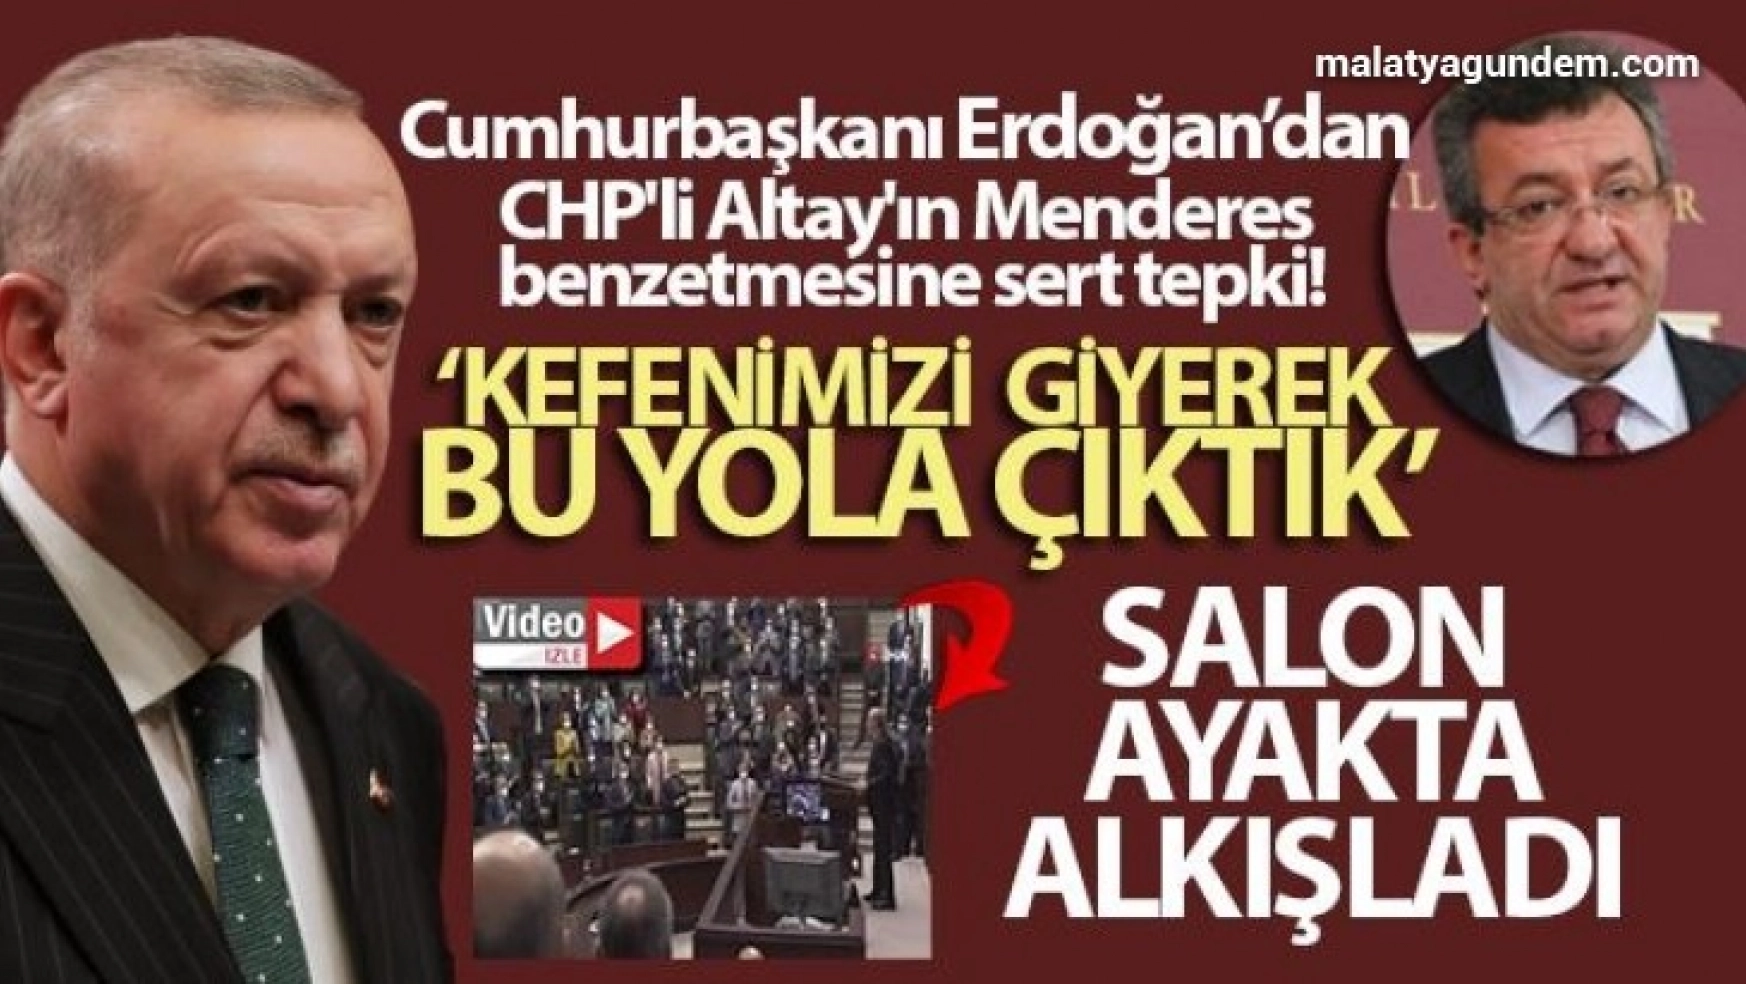 Cumhurbaşkanı Erdoğan, CHP'li Altay'ın Menderes benzetmesine cevap verdi!